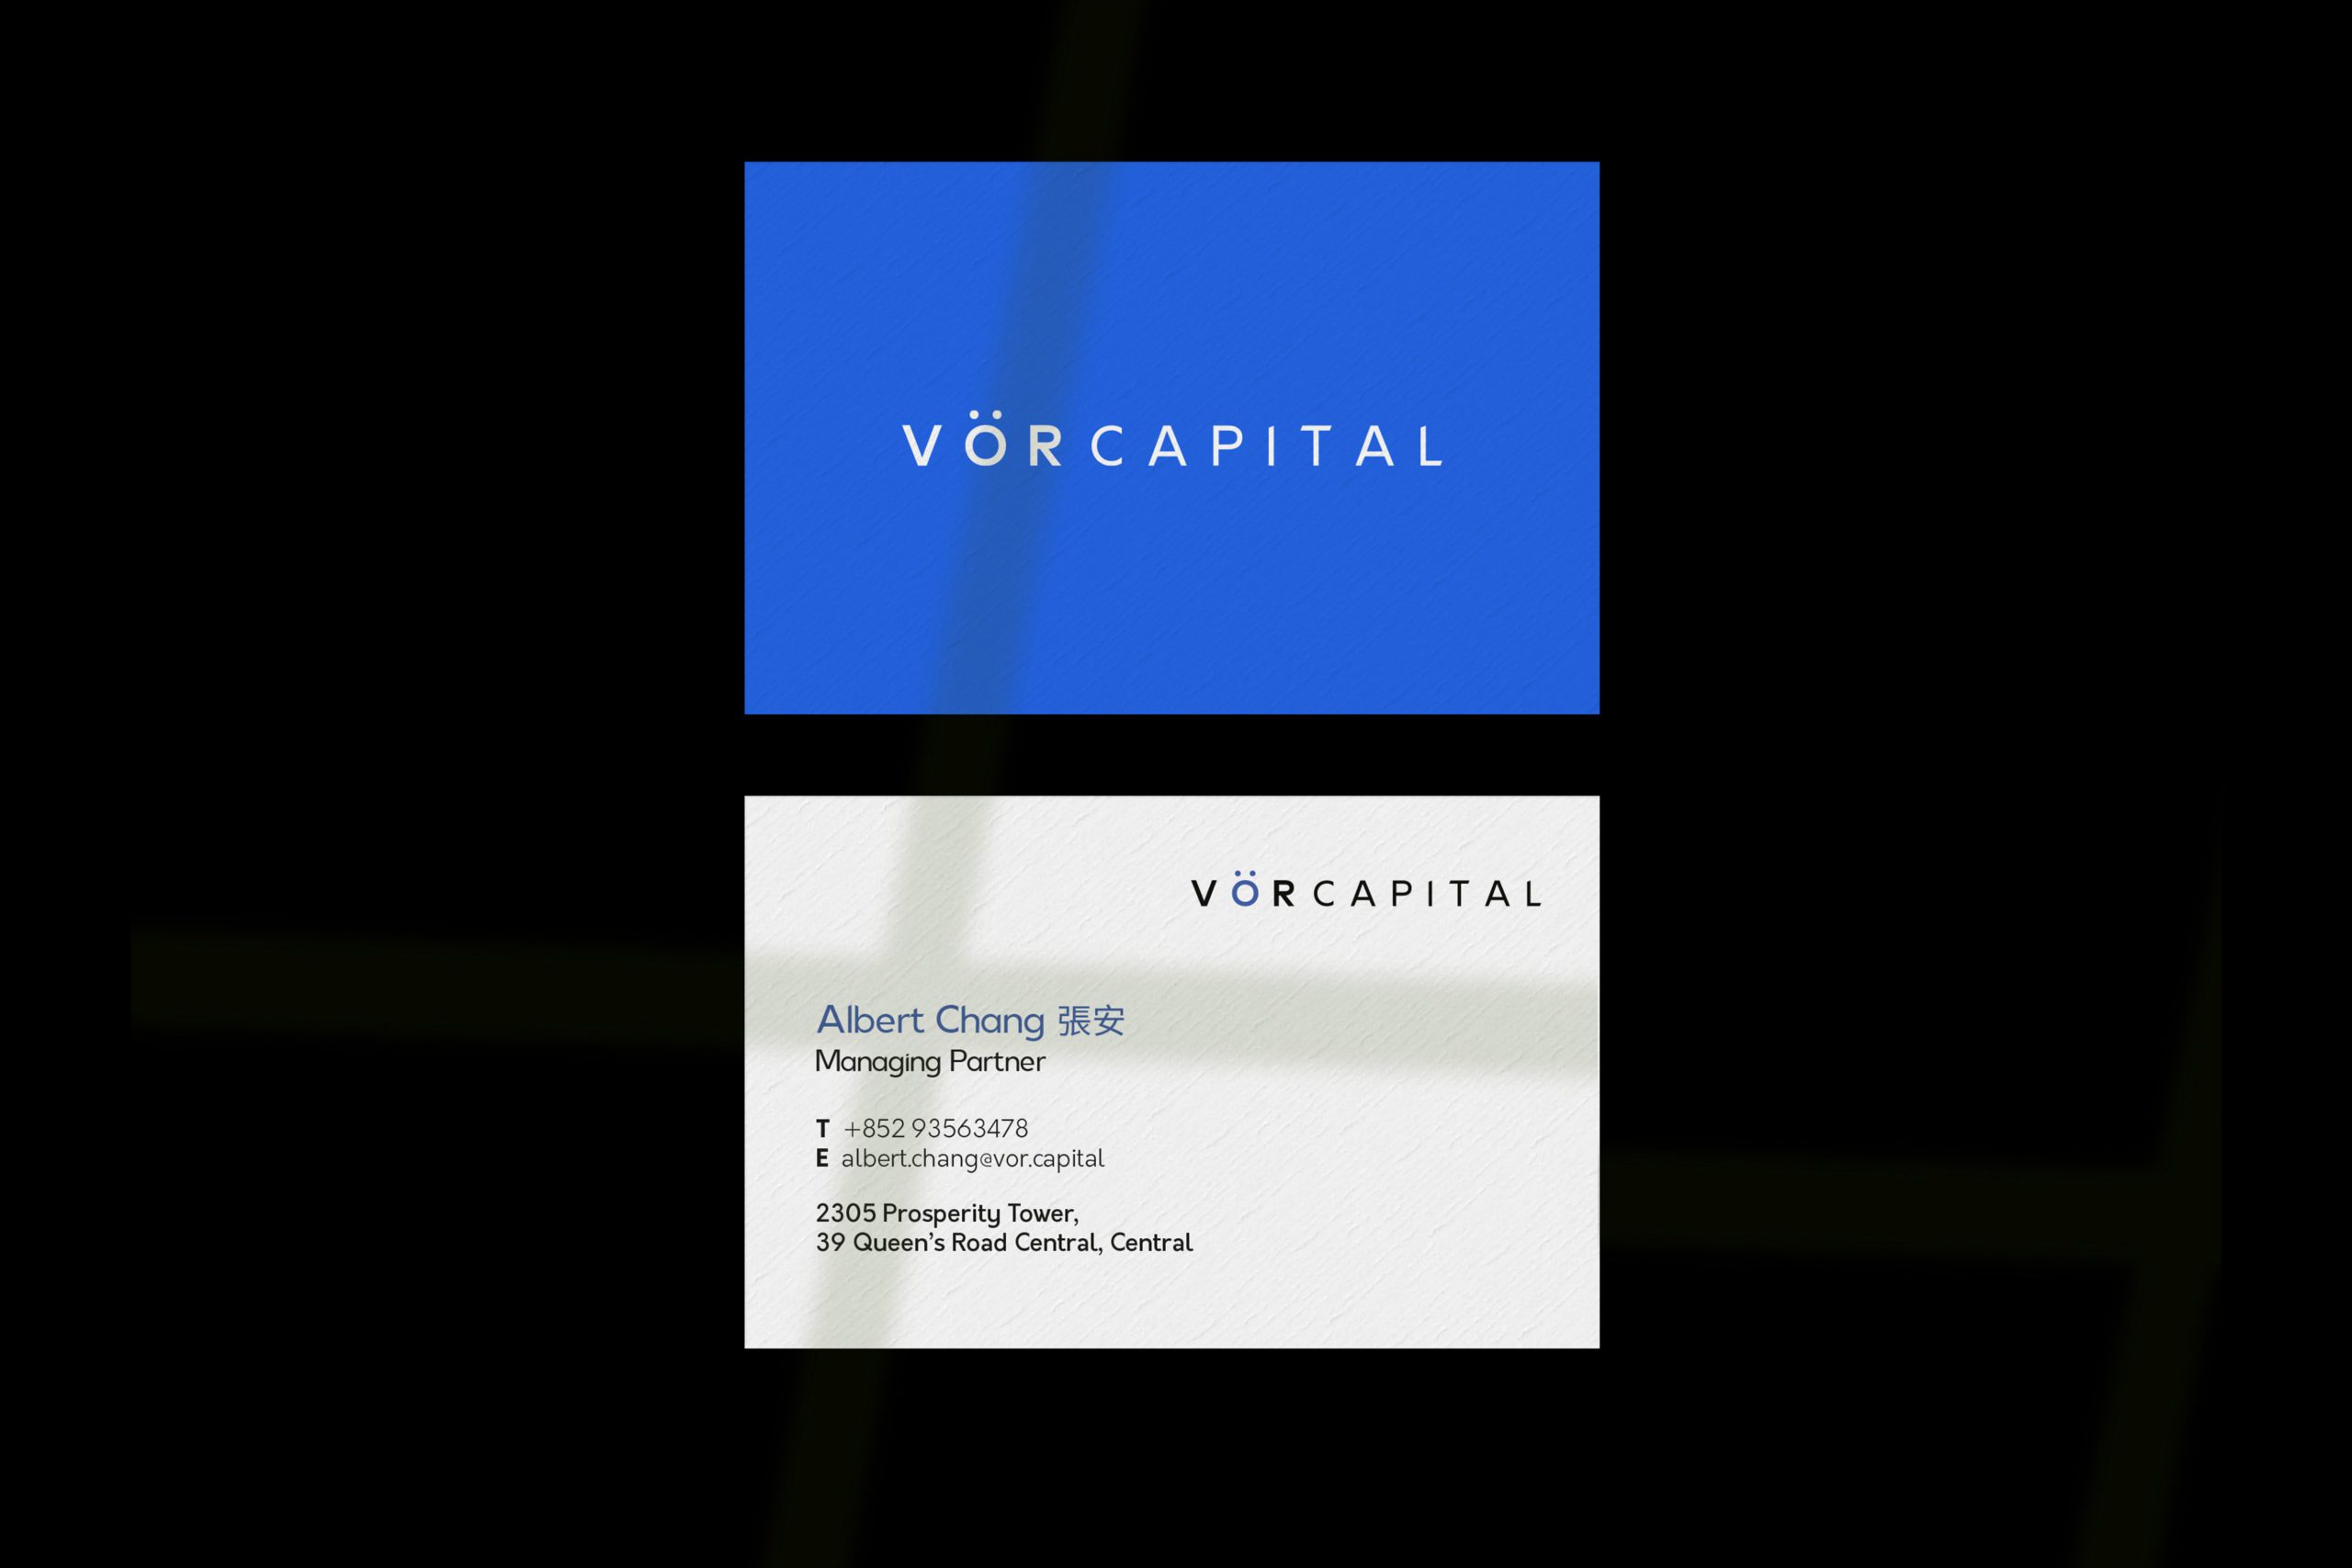 VOR Capital Business card design